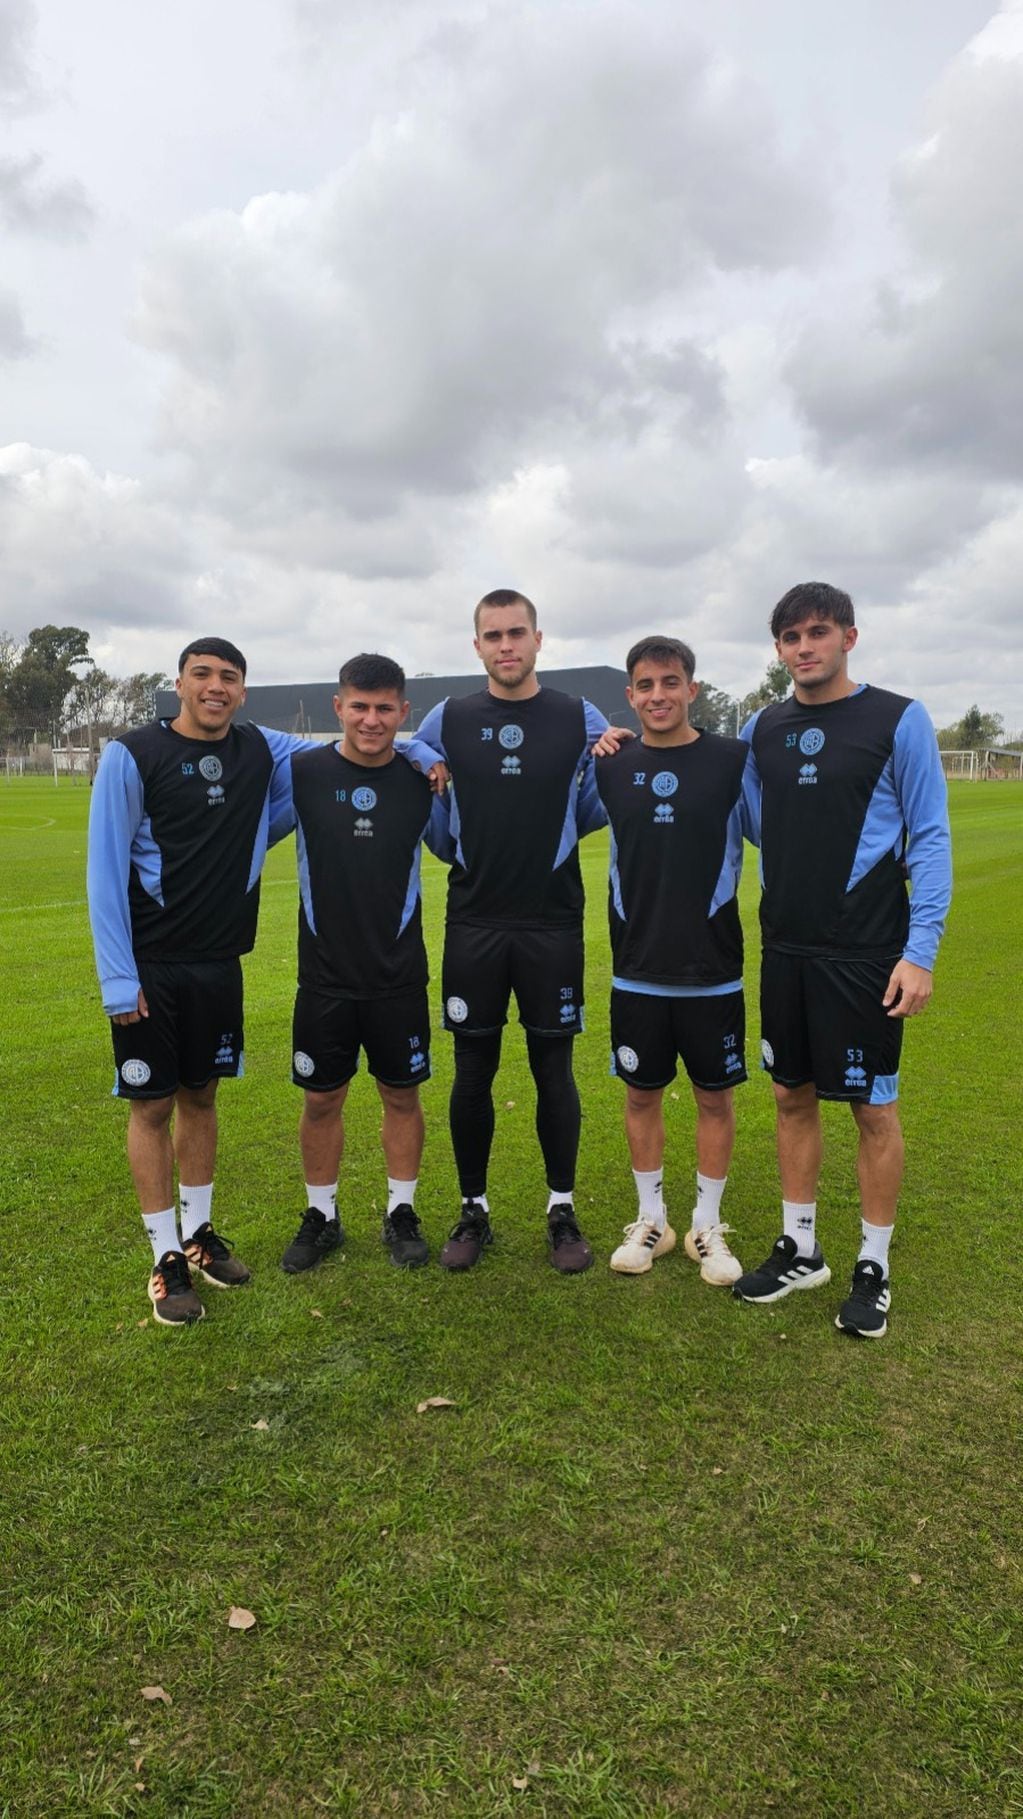 Lucas Bustos, Rami Hernandes, Maxi Oses, Juan Velázquez, Lucas Argayo viven su primera pretemporada con Belgrano, club que los vio nacer.